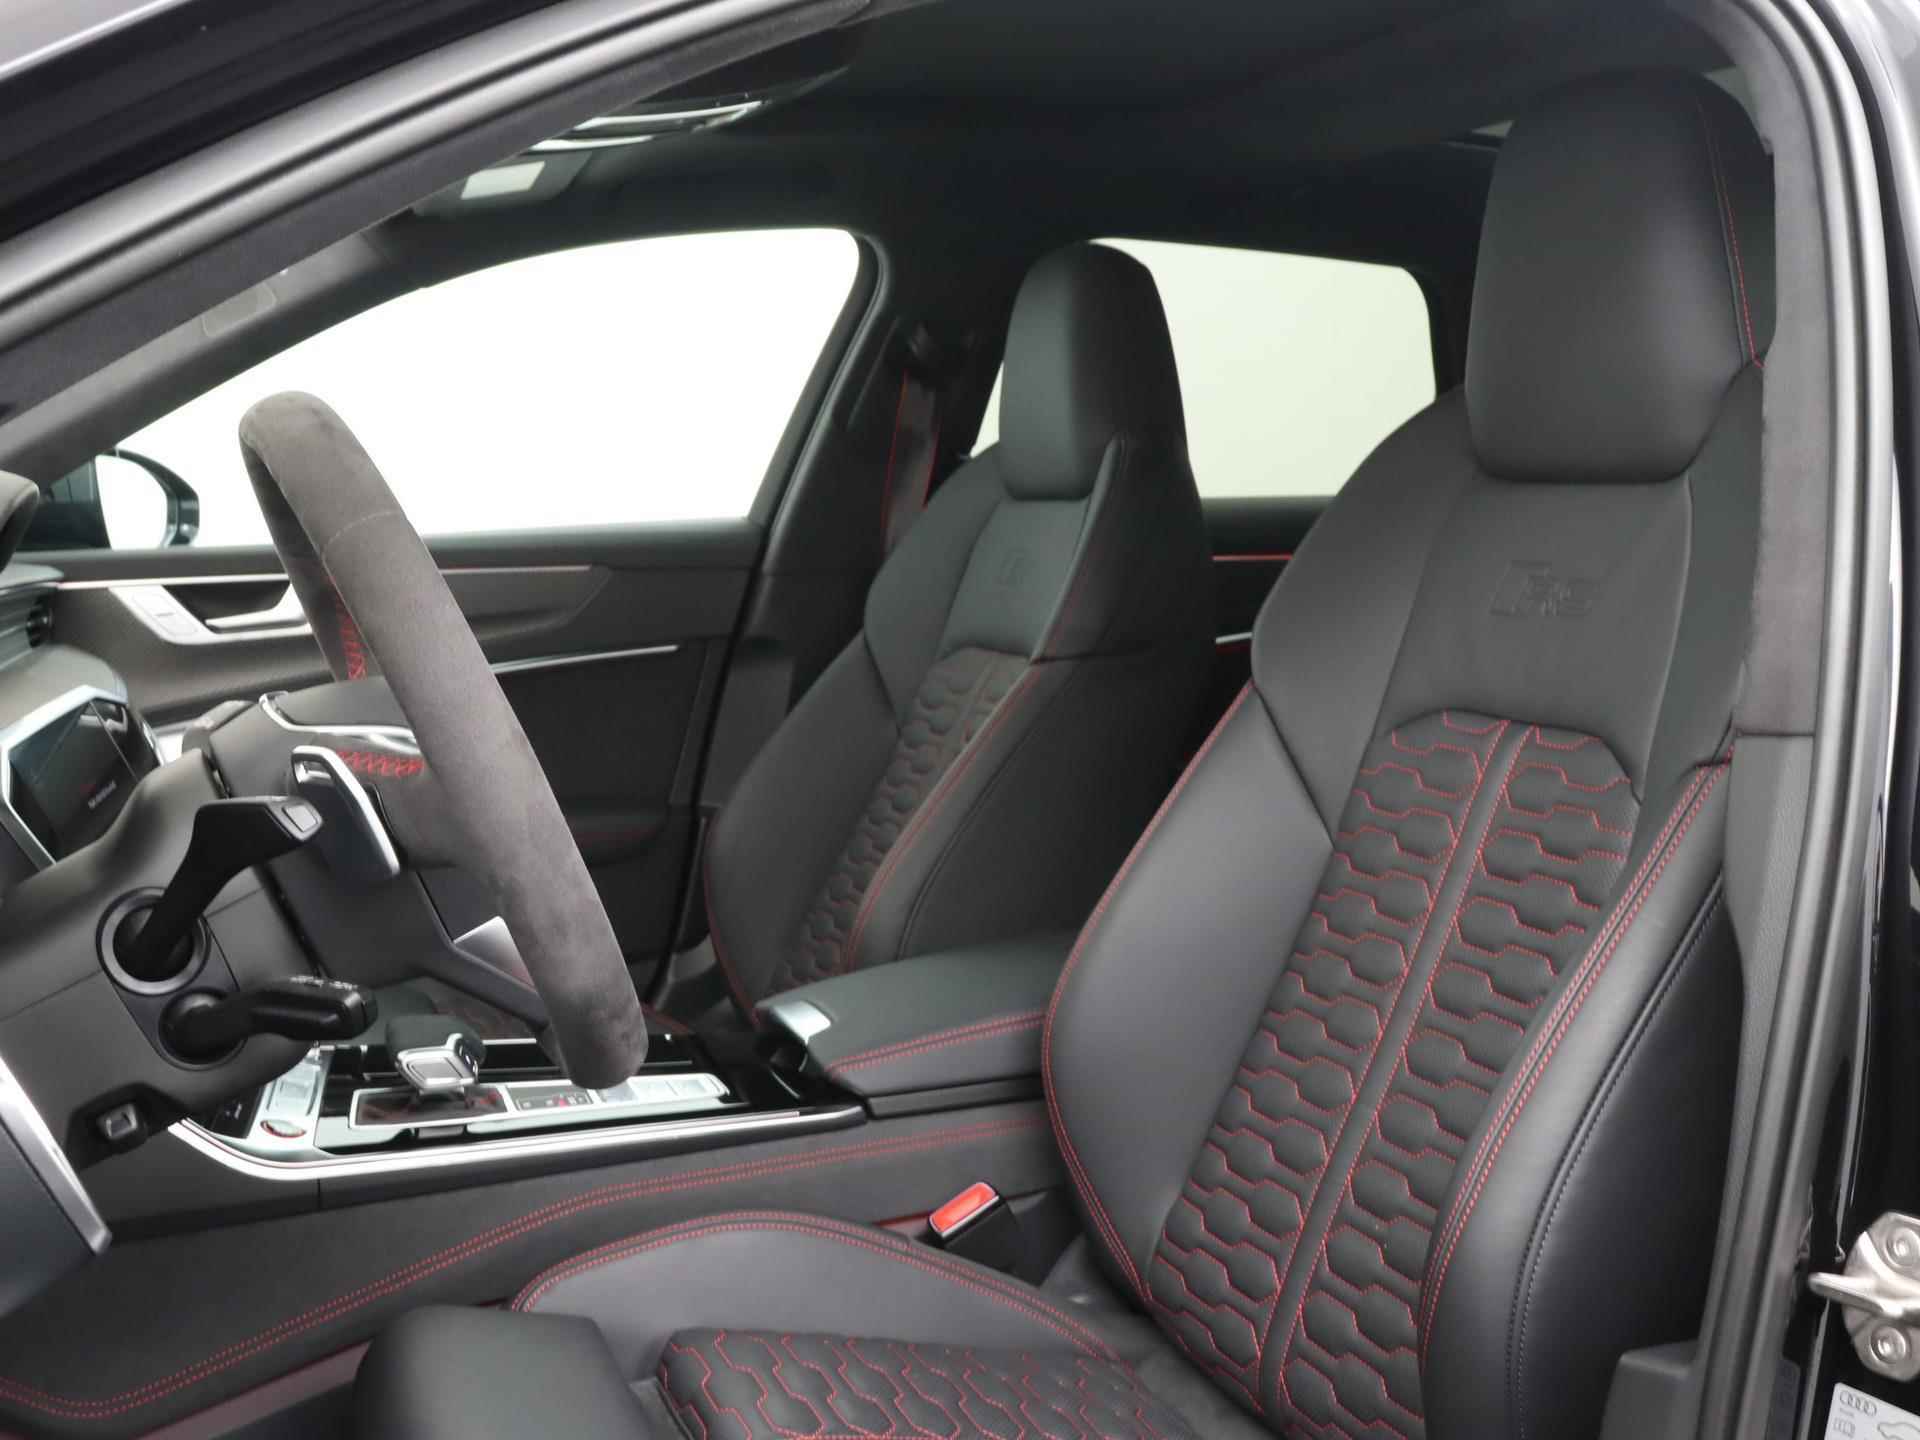 Audi RS 6 Avant TFSI quattro 600 PK | Head-up display | Bang & Olufsen Soundsystem | 22 inch lm velgen | RS Dynamic Pakket Plus | RS Design pakket Rood |Optiekpakket Zwart Plus | Panorama dak | RS Sportuitlaat | Keramische remschijven Rood | RS Sportonderstel Plus | Servosluiting deuren | Nu € 36.129,- ACTIEKORTING! | DIRECT LEVERBAAR! | - 6/35